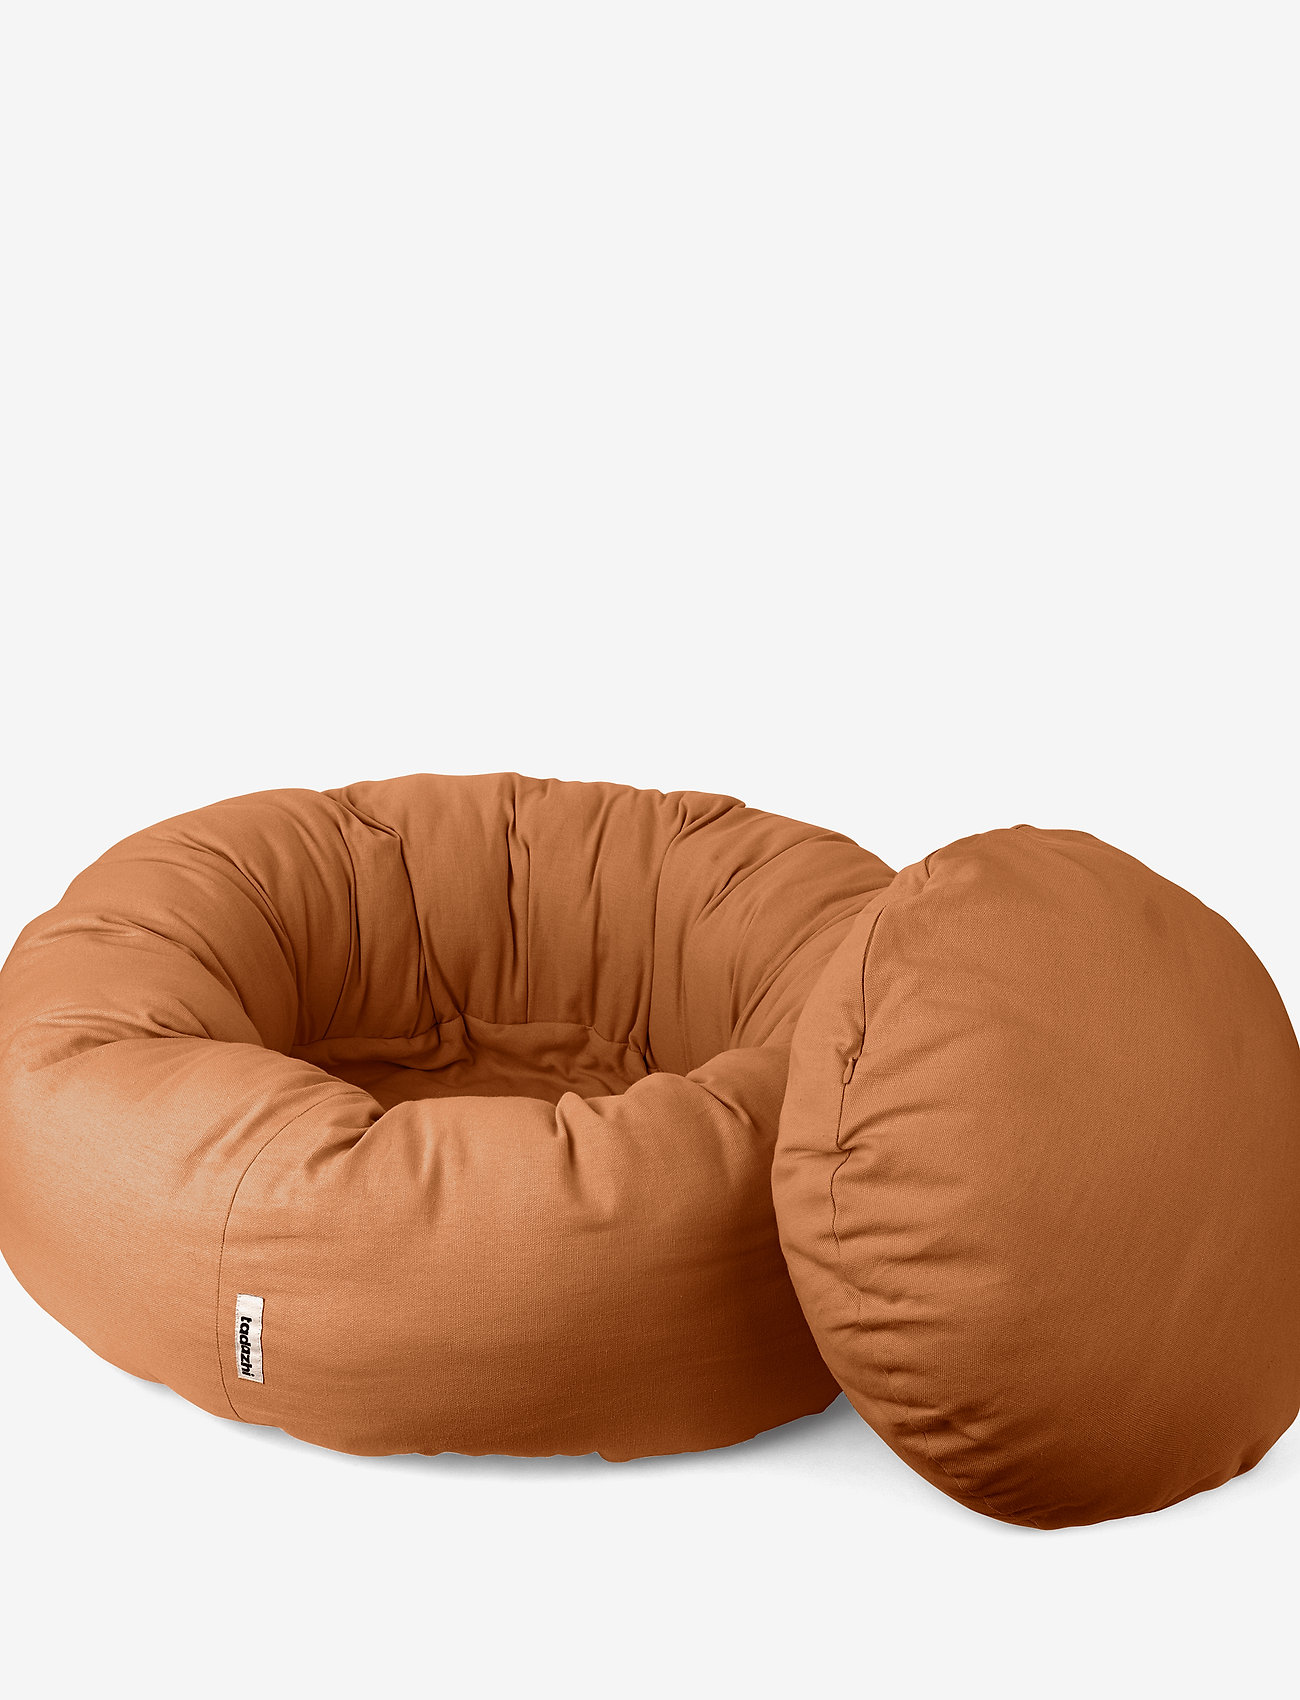 tadazhi - Donut bed - dog beds - light brown - 1